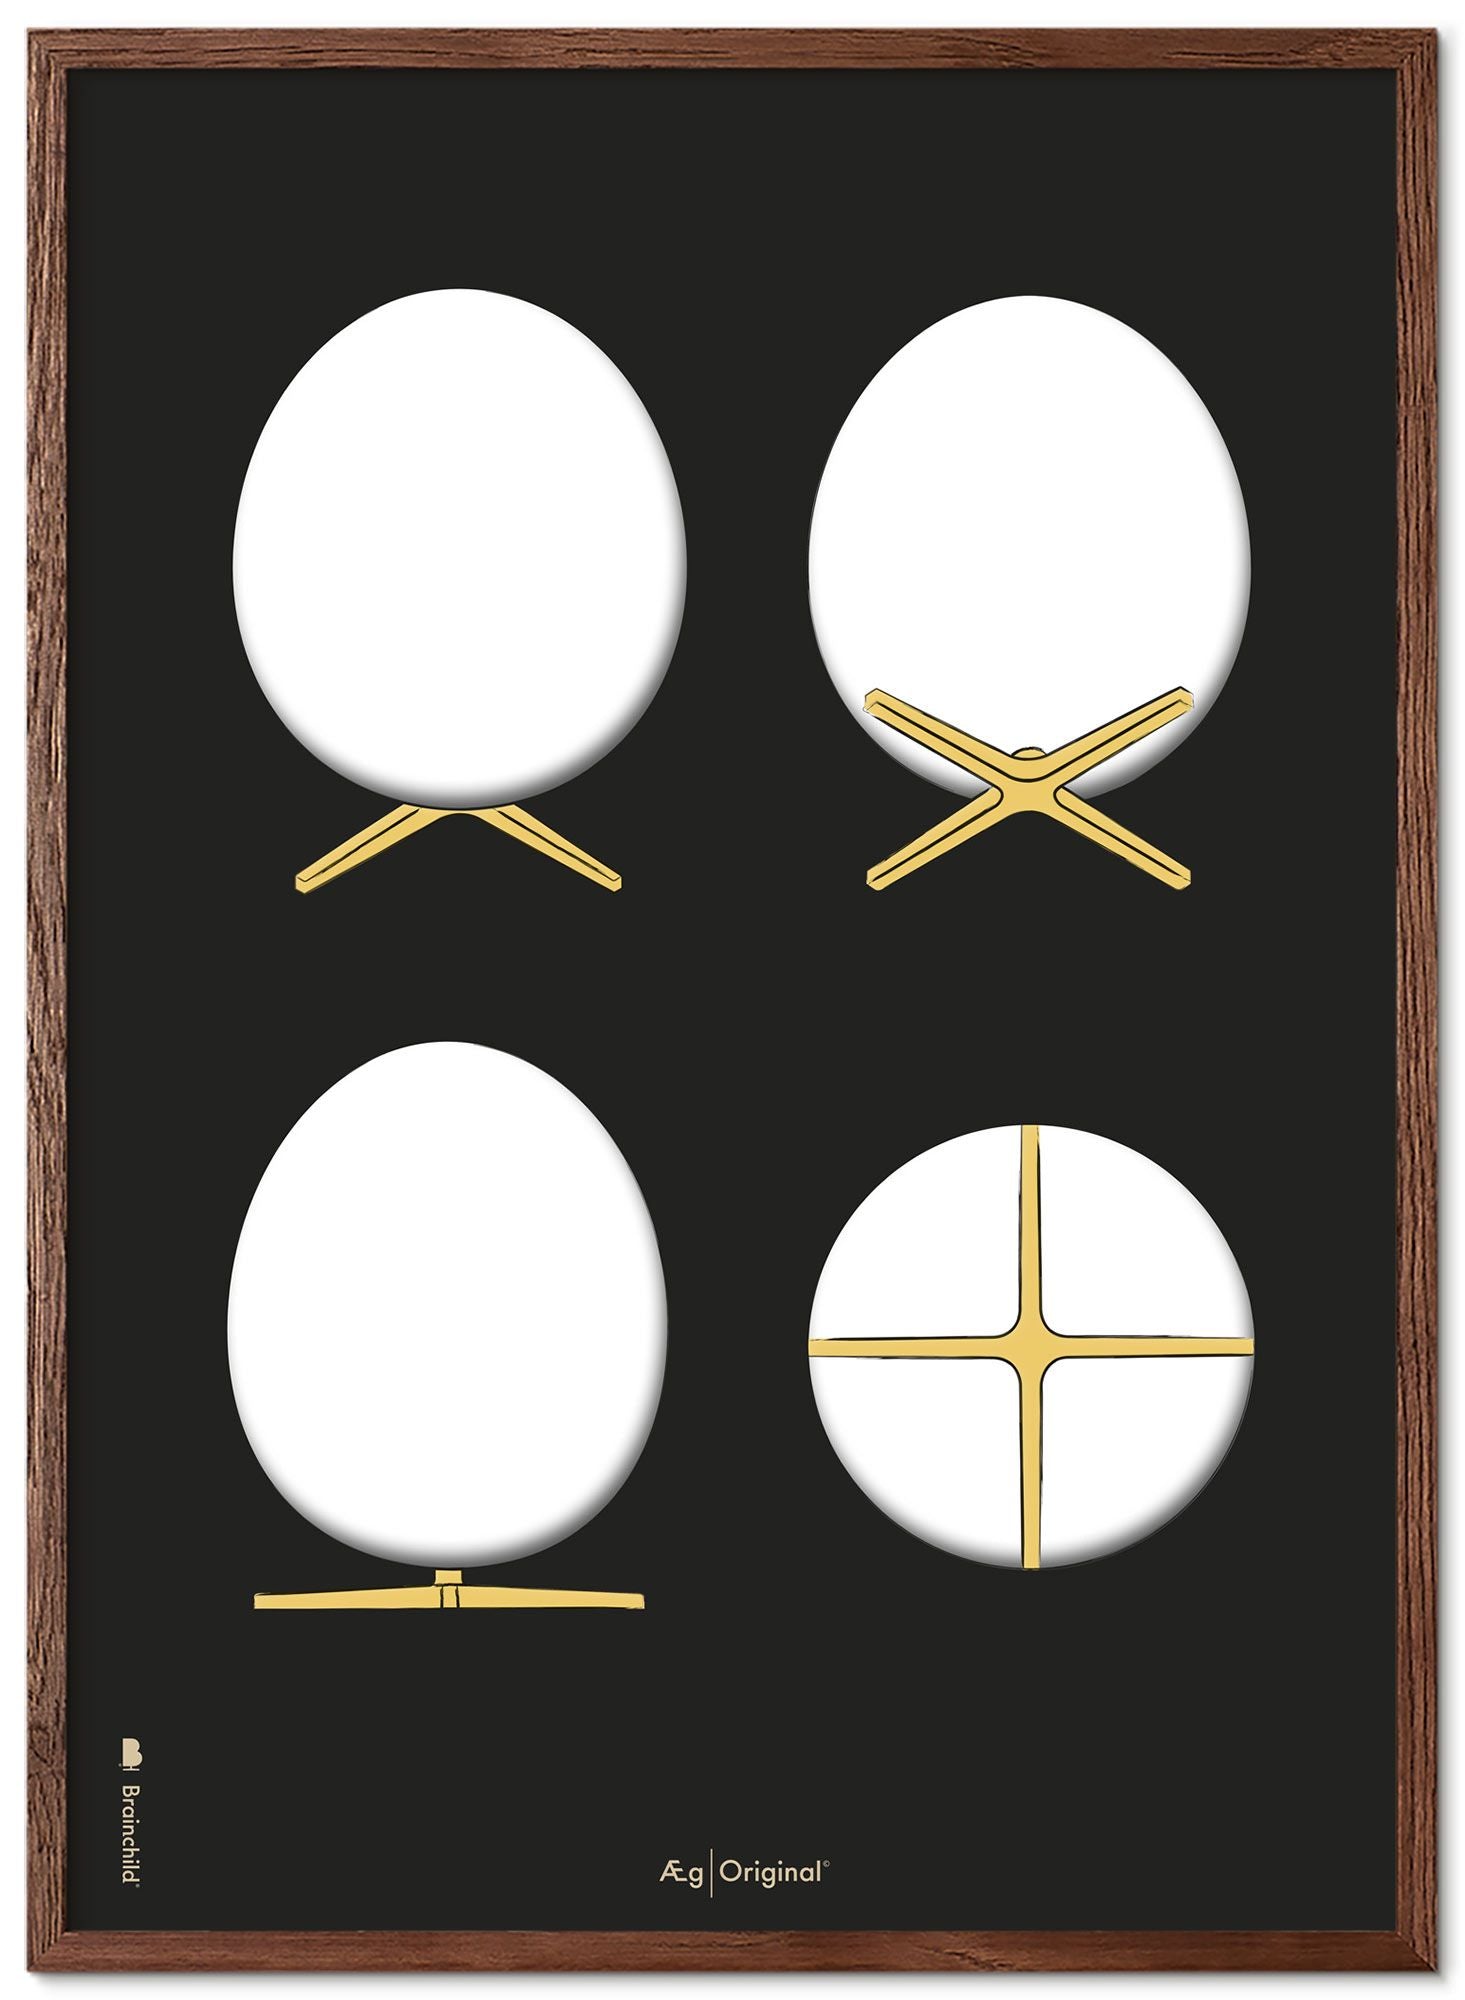 Brainchild Egg Design Sketches Poster Frame Synkkä puu 70x100 Cm, Black Background